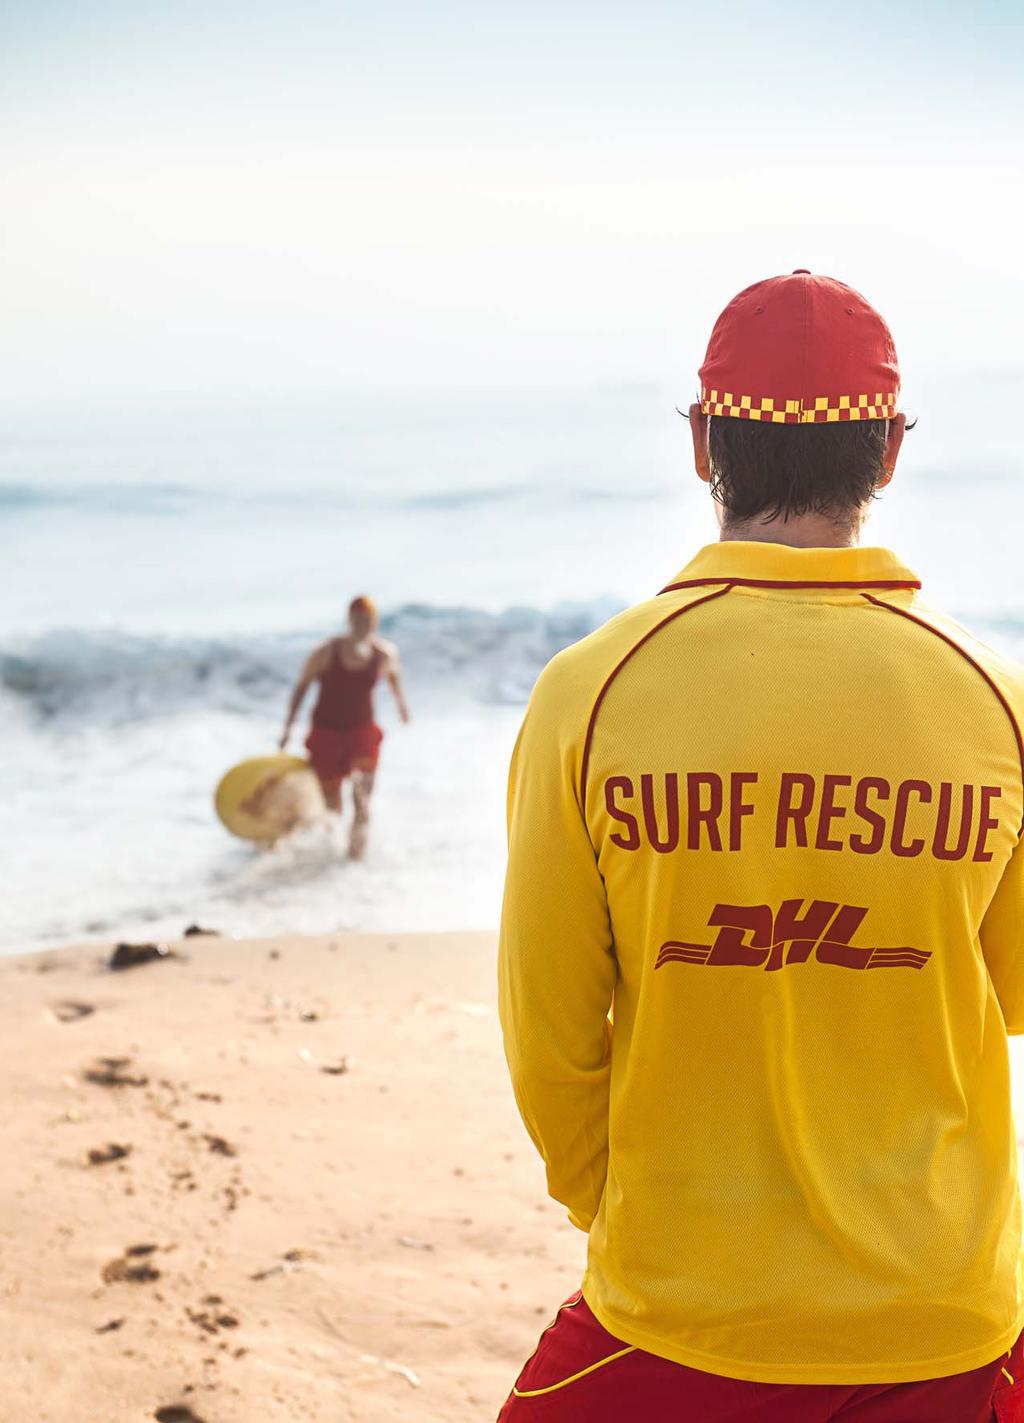 The Surf Life Saving